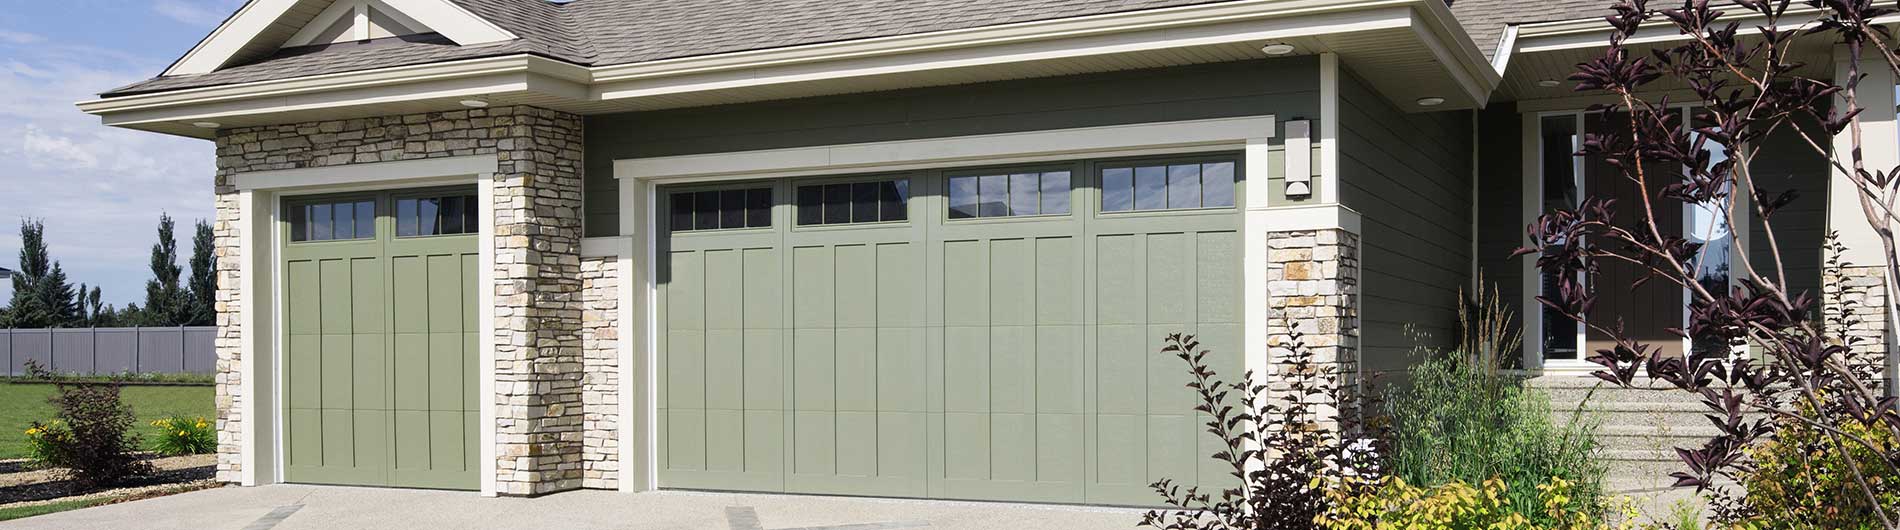 pastel green garage door